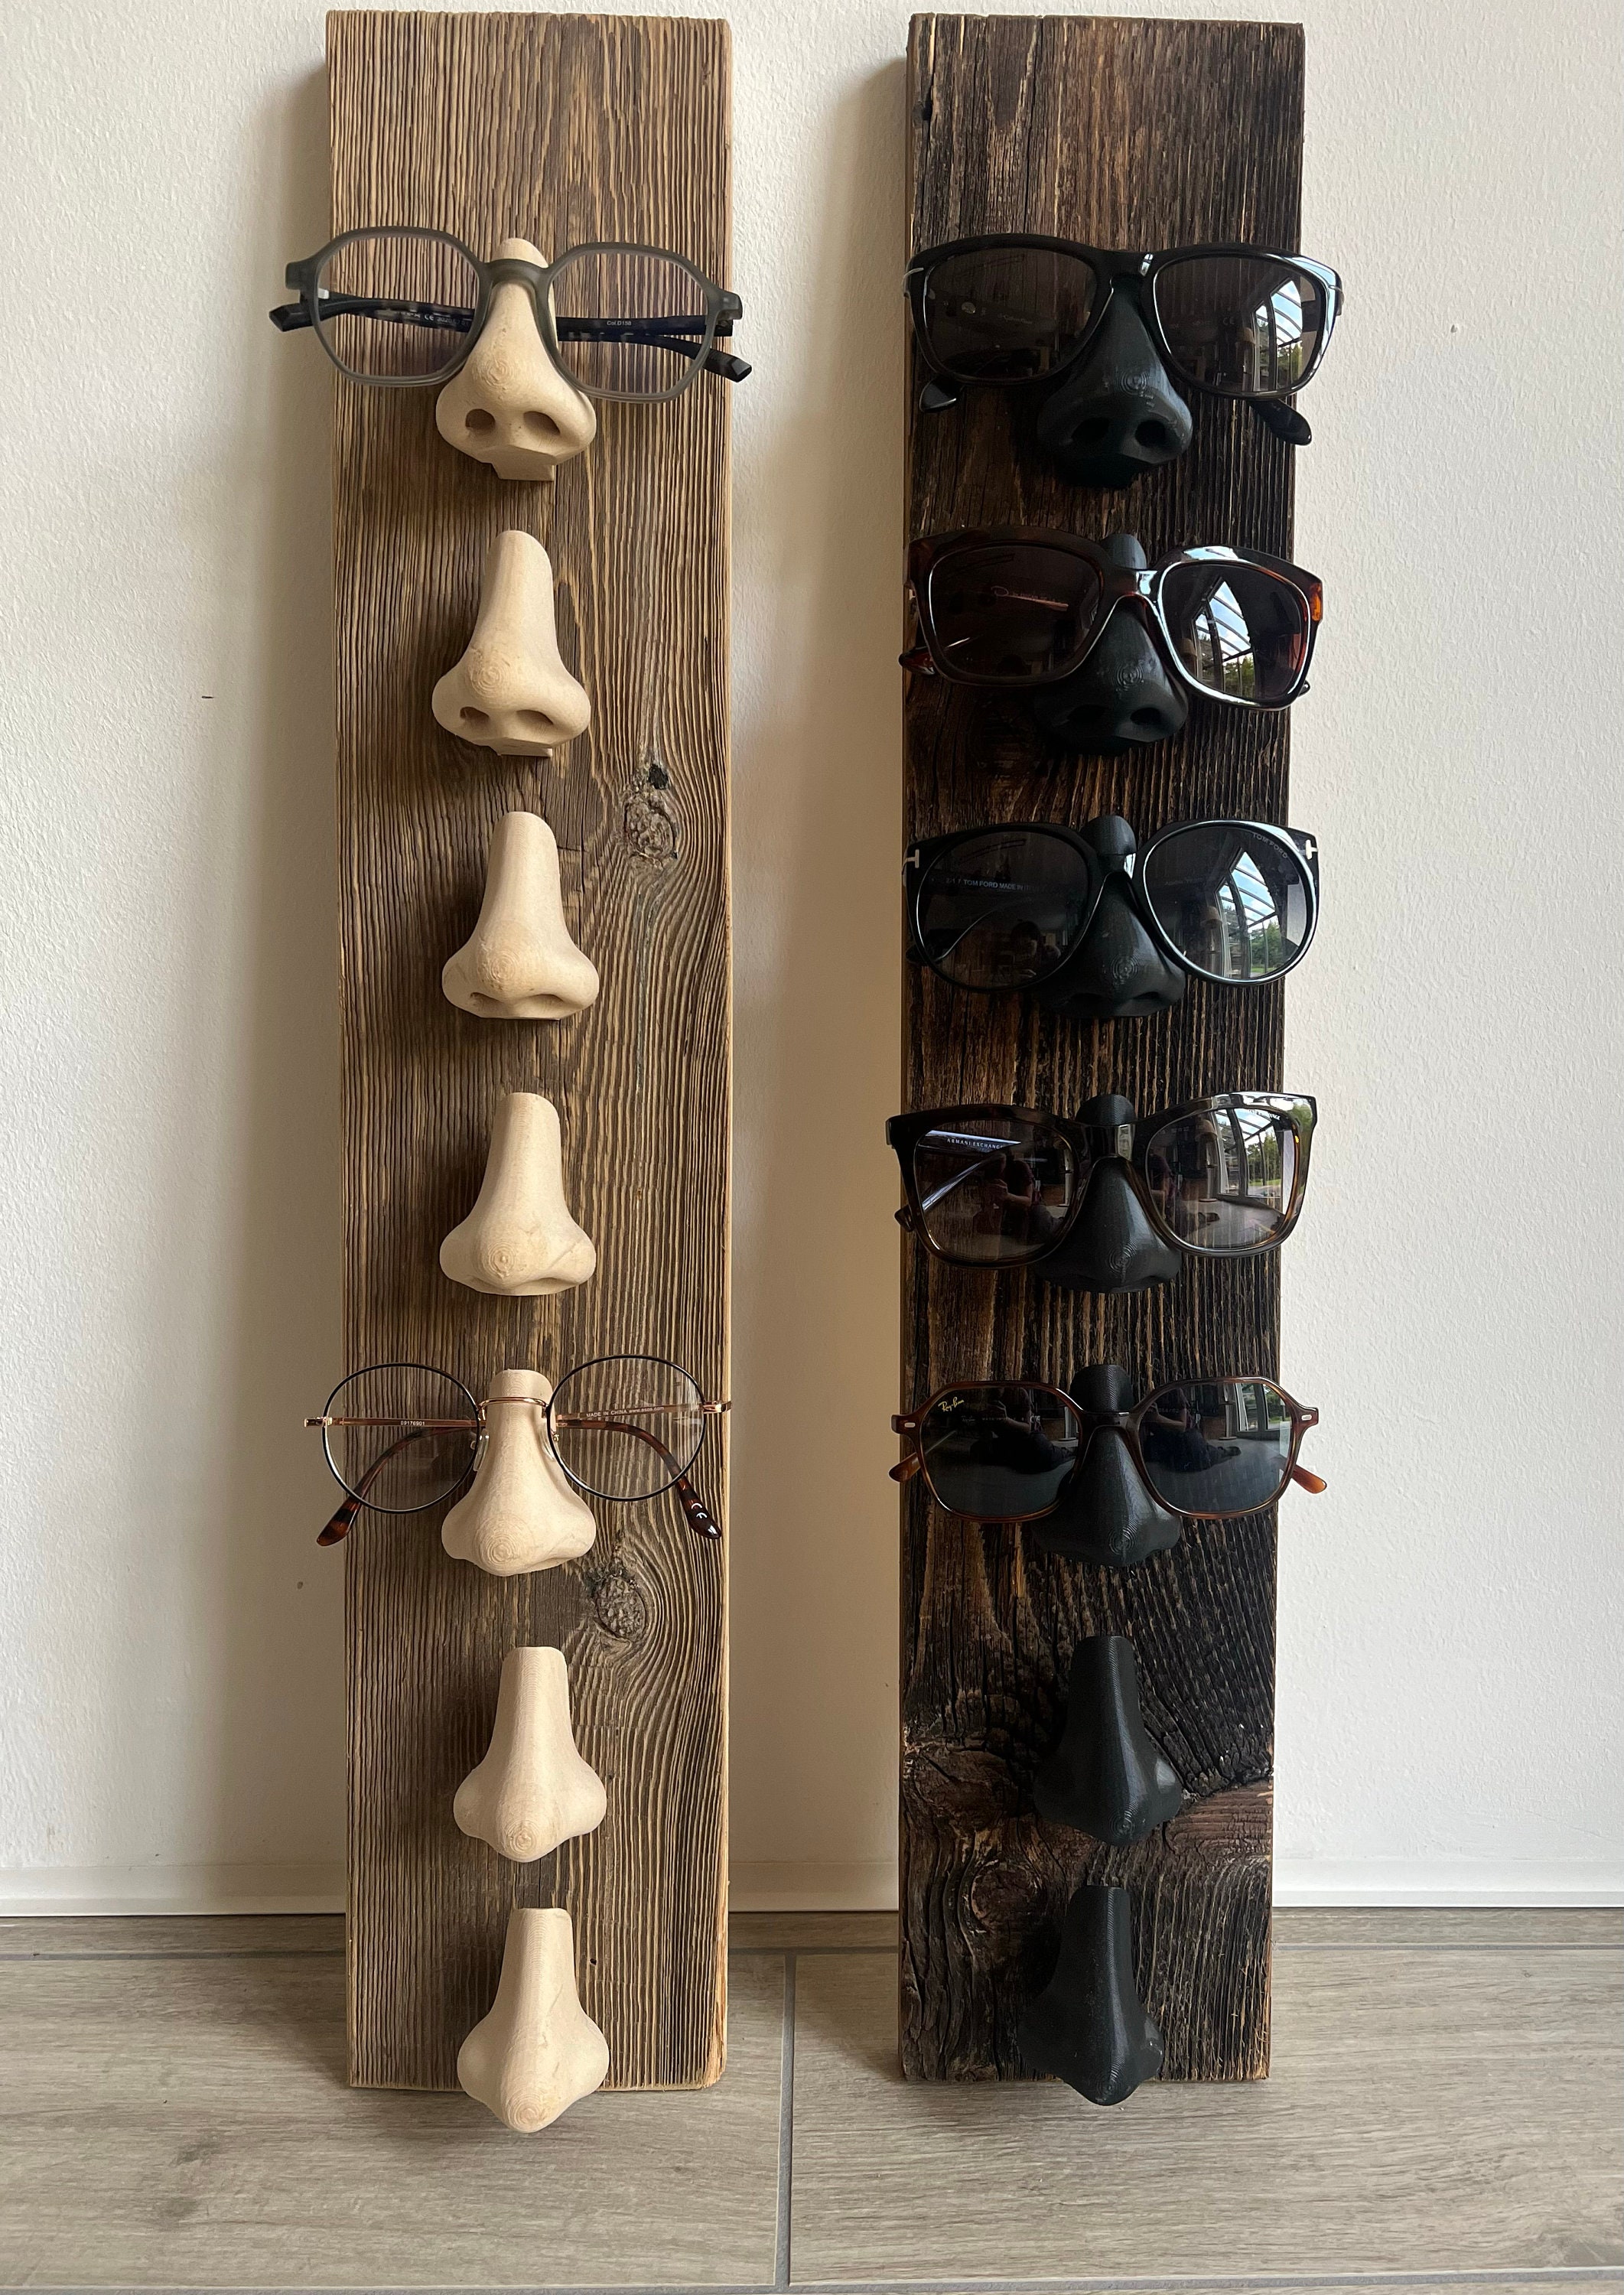 Regal aus Holz für Sonnenbrillen, Brillenständer, Brillenregal,  Ausstellungsrahmen – die besten Artikel im Online-Shop Joom Geek